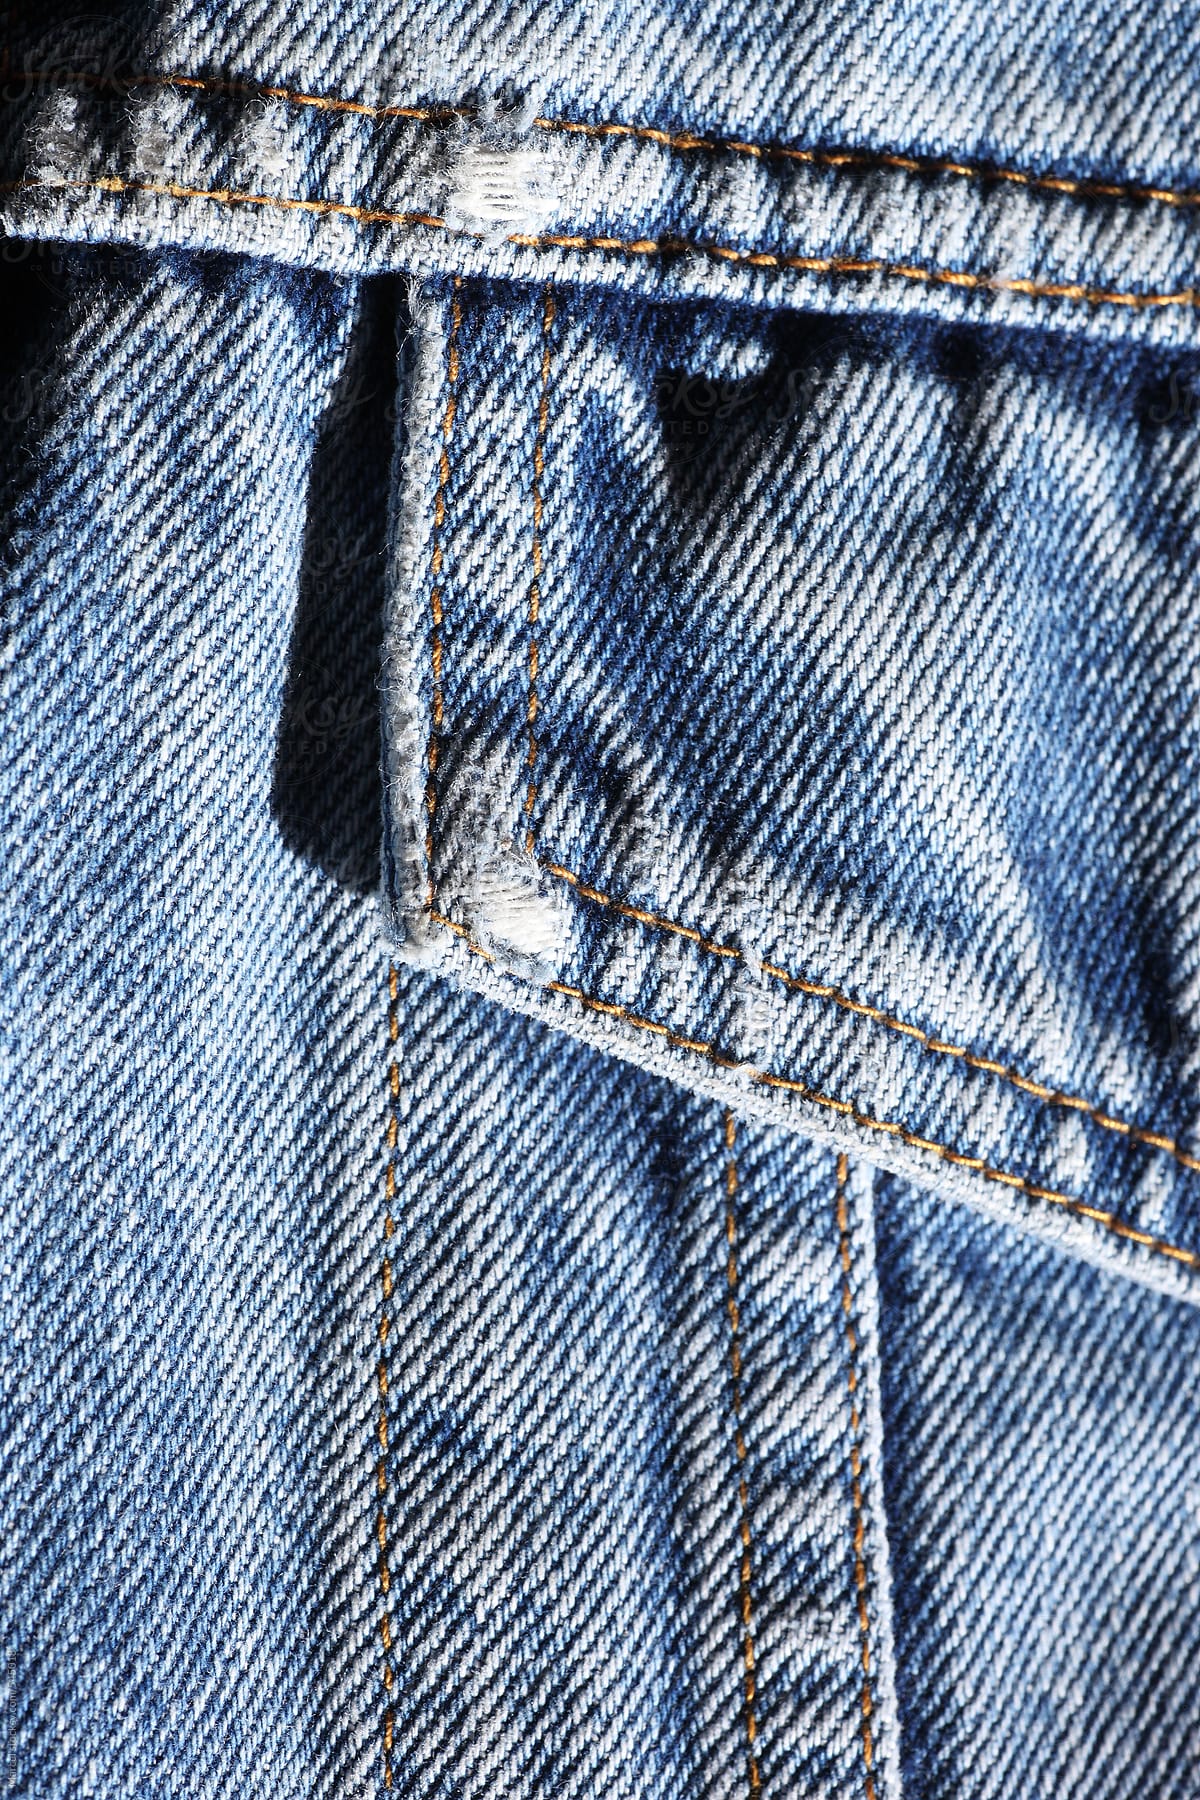 Vintage denim jacket detail